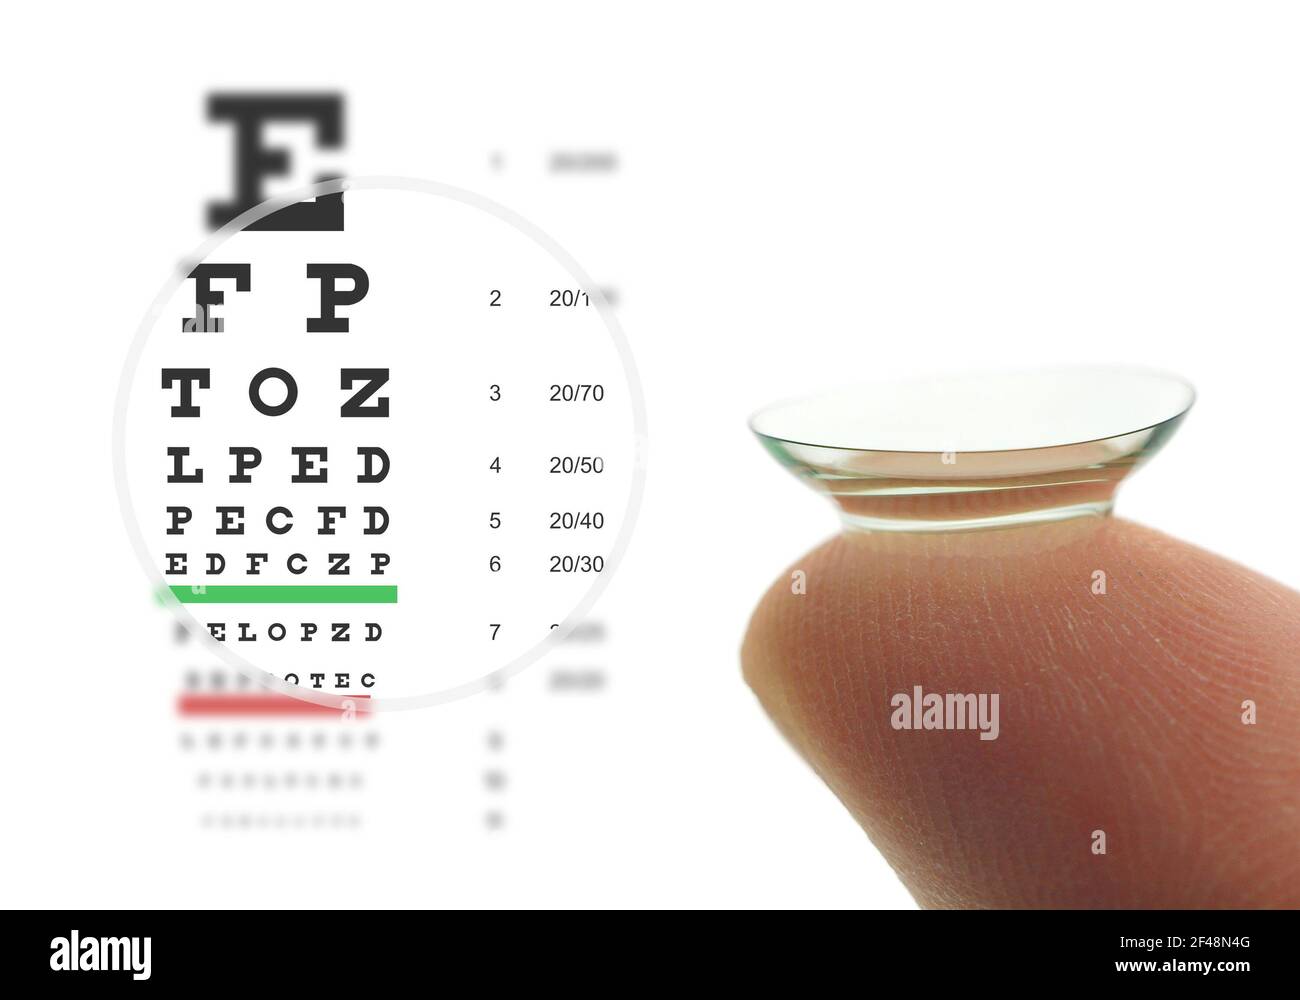 Kontaktlinse am Finger und Snellen-Augendiagramm. Konzept scharfe Sicht. Stockfoto